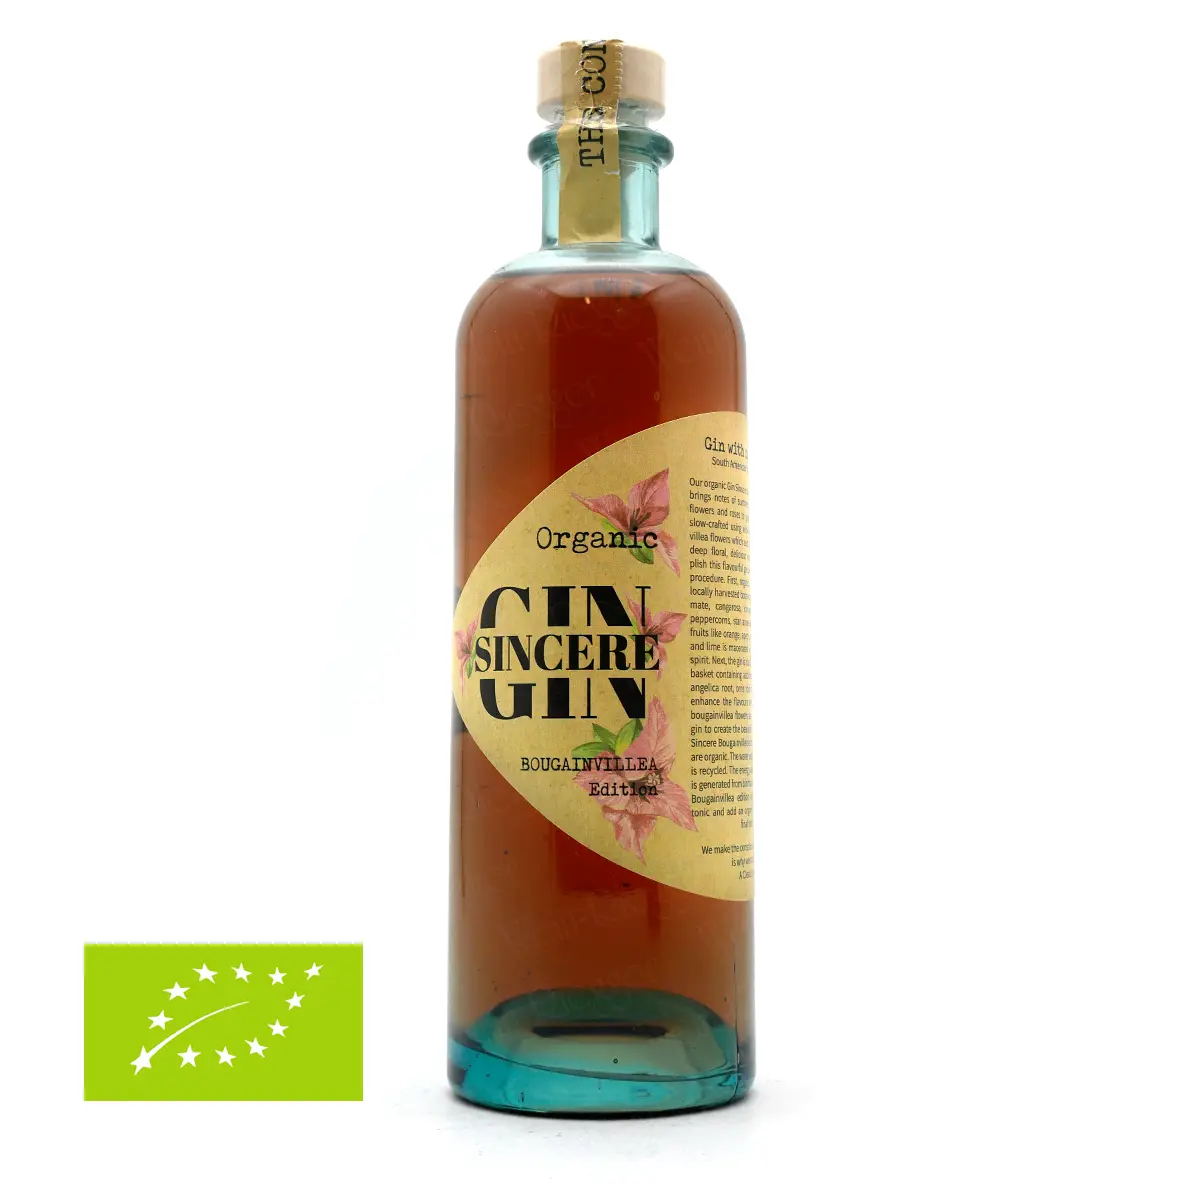 Organic Sincere Gin | Bougainvillea Edition